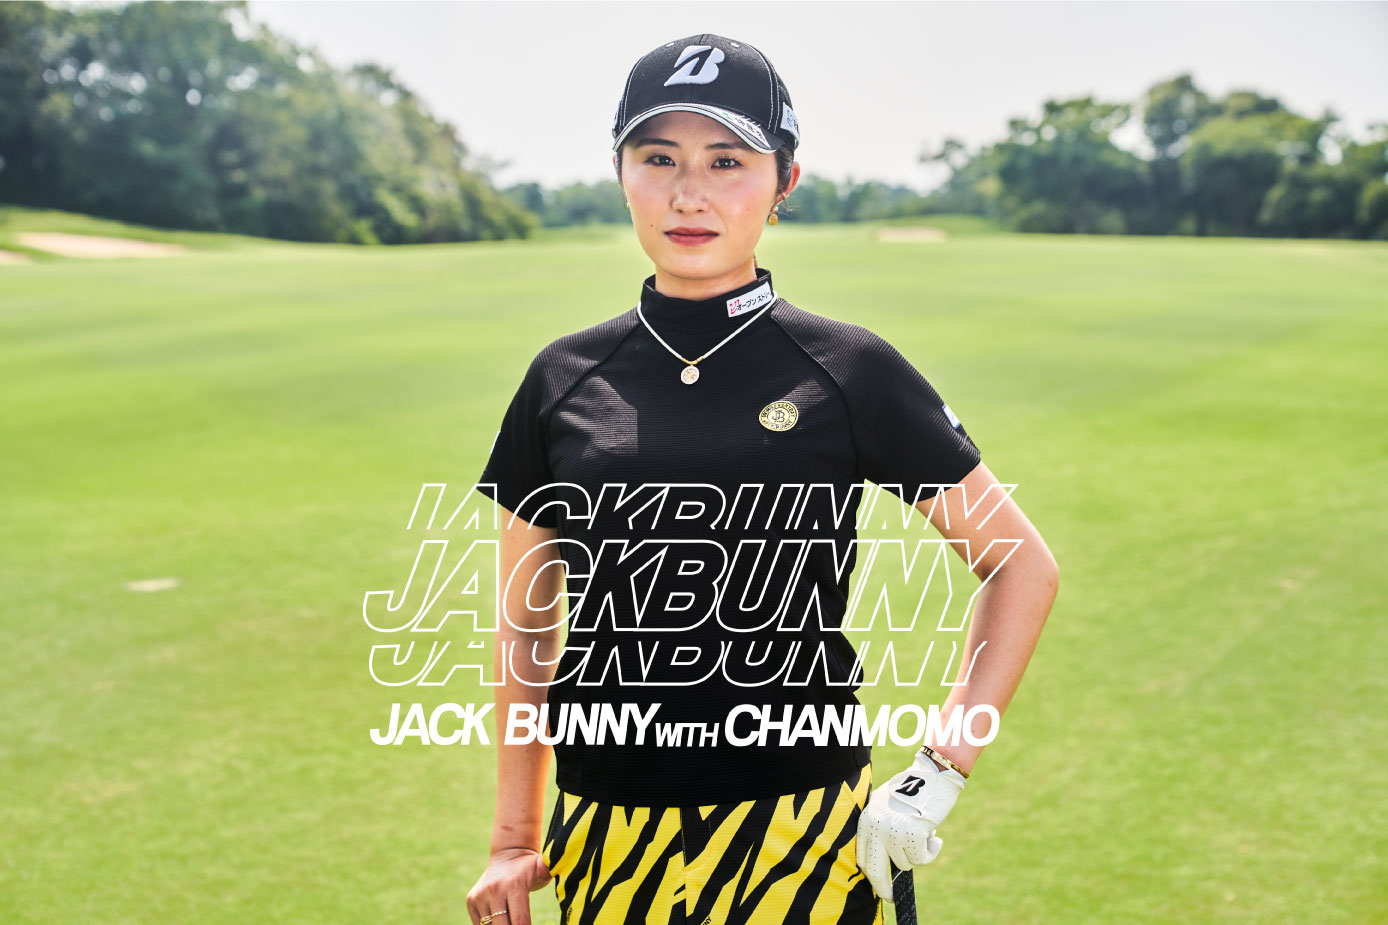 ゴルフアパレル「Jack Bunny!!」と契約プロゴルファー大里桃子プロのコラボアイテム『JACK BUNNY with CHANMOMO』を発売！